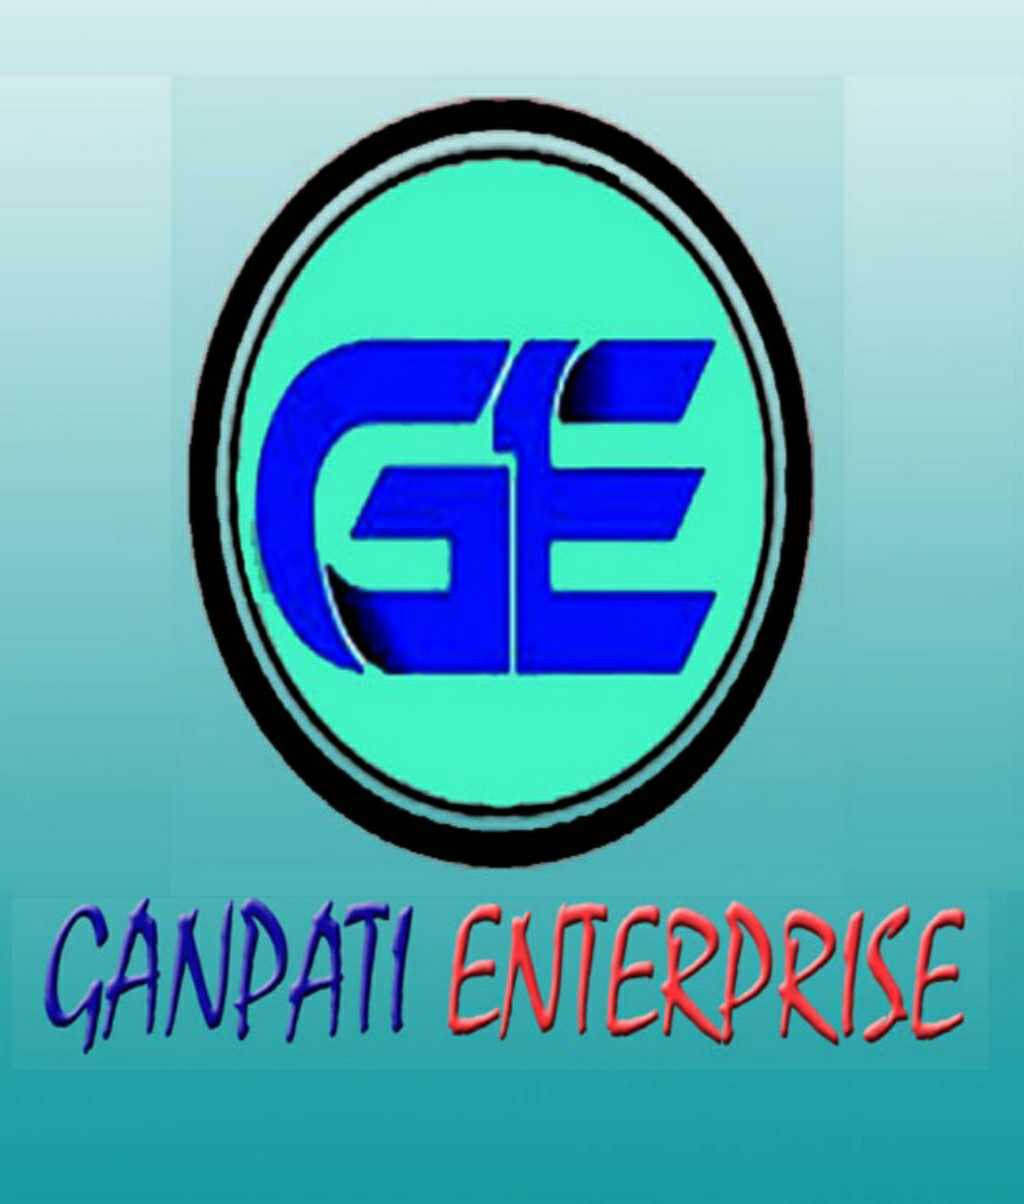 Ganpati Enterprise